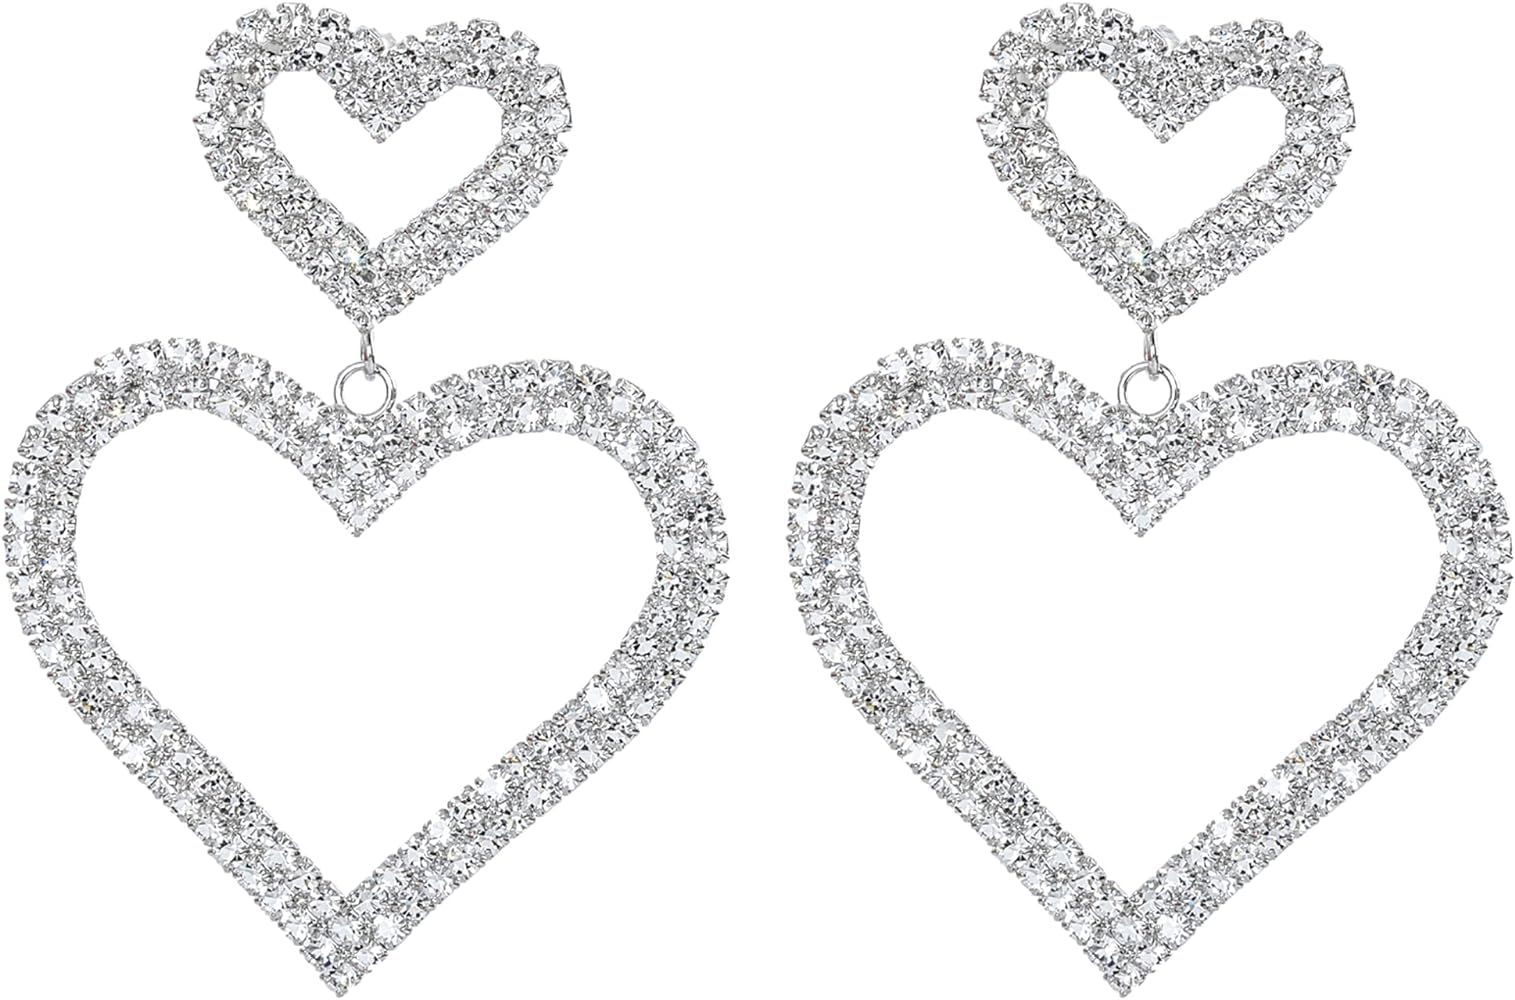 Rave Envy Heart Earrings for Women, Valentine Earrings for Women - Fashionable Statement Earrings... | Amazon (US)